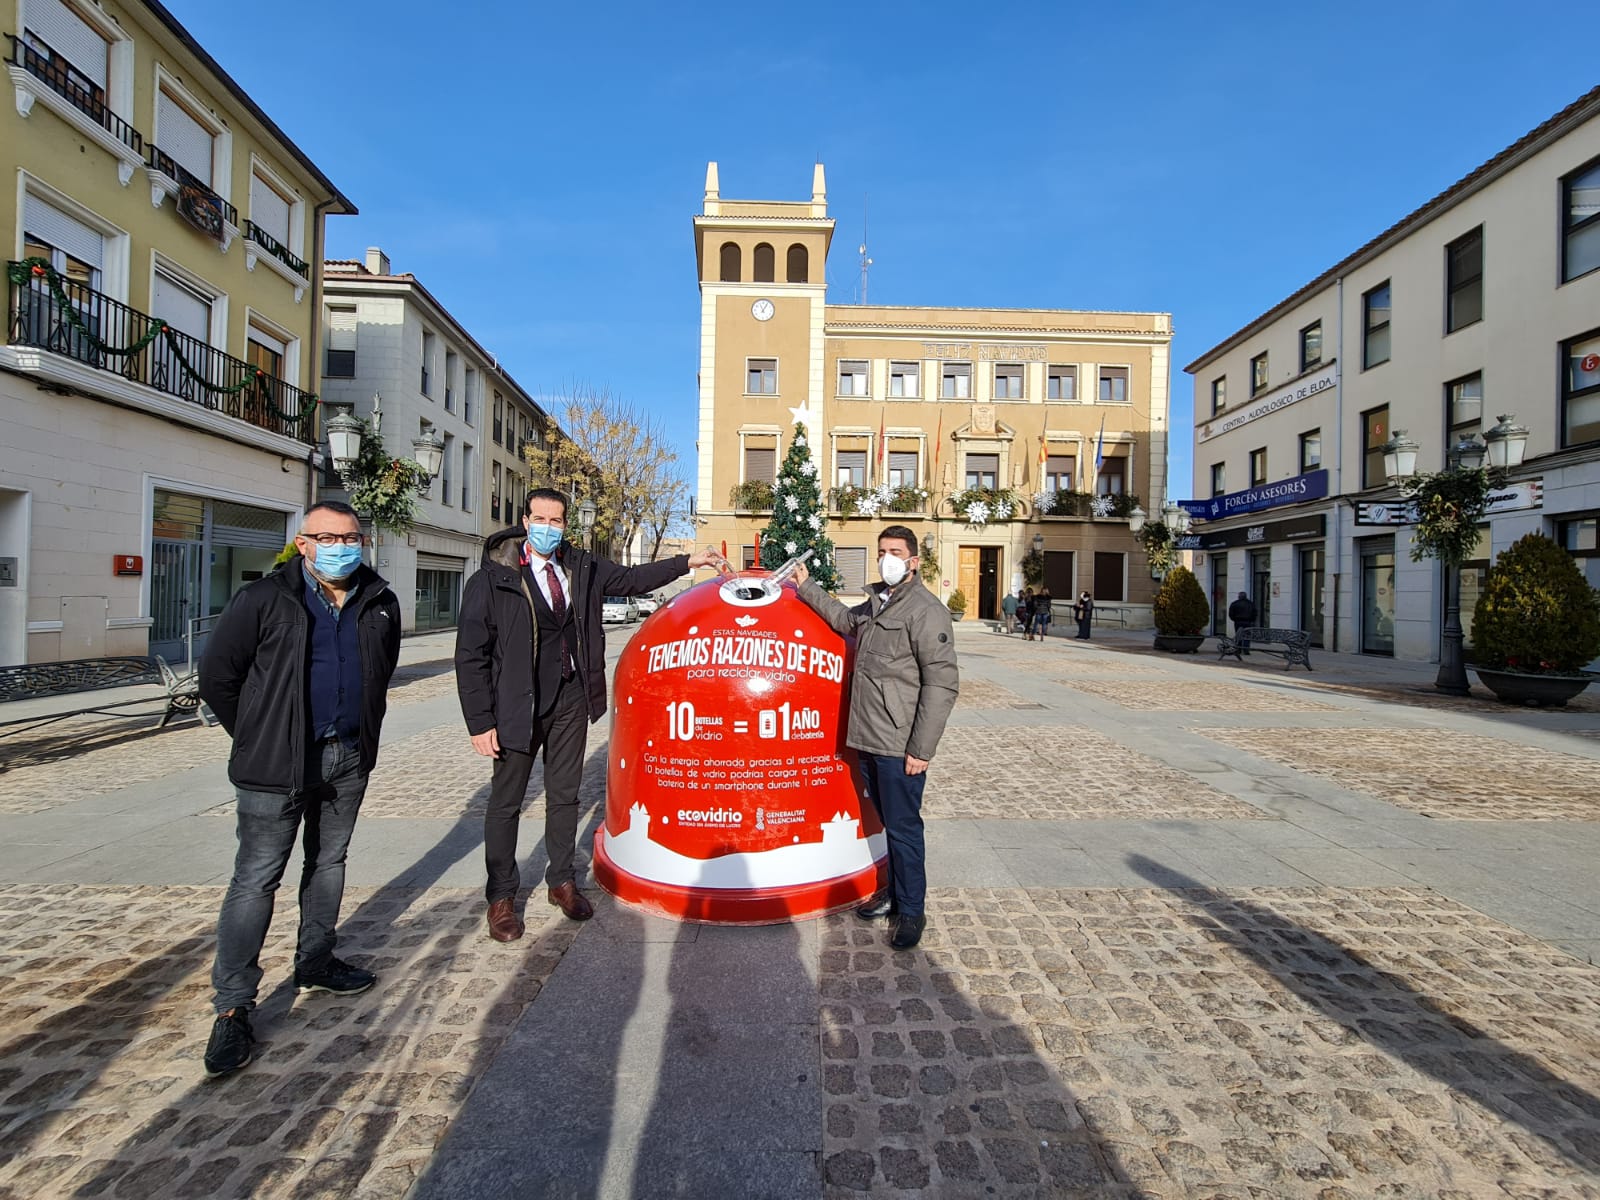 El Ayuntamiento de Elda y Ecovidrio ponen en marcha la campaña ‘Tenemos razones de peso’ para promover el reciclaje de vidrio en Navidad